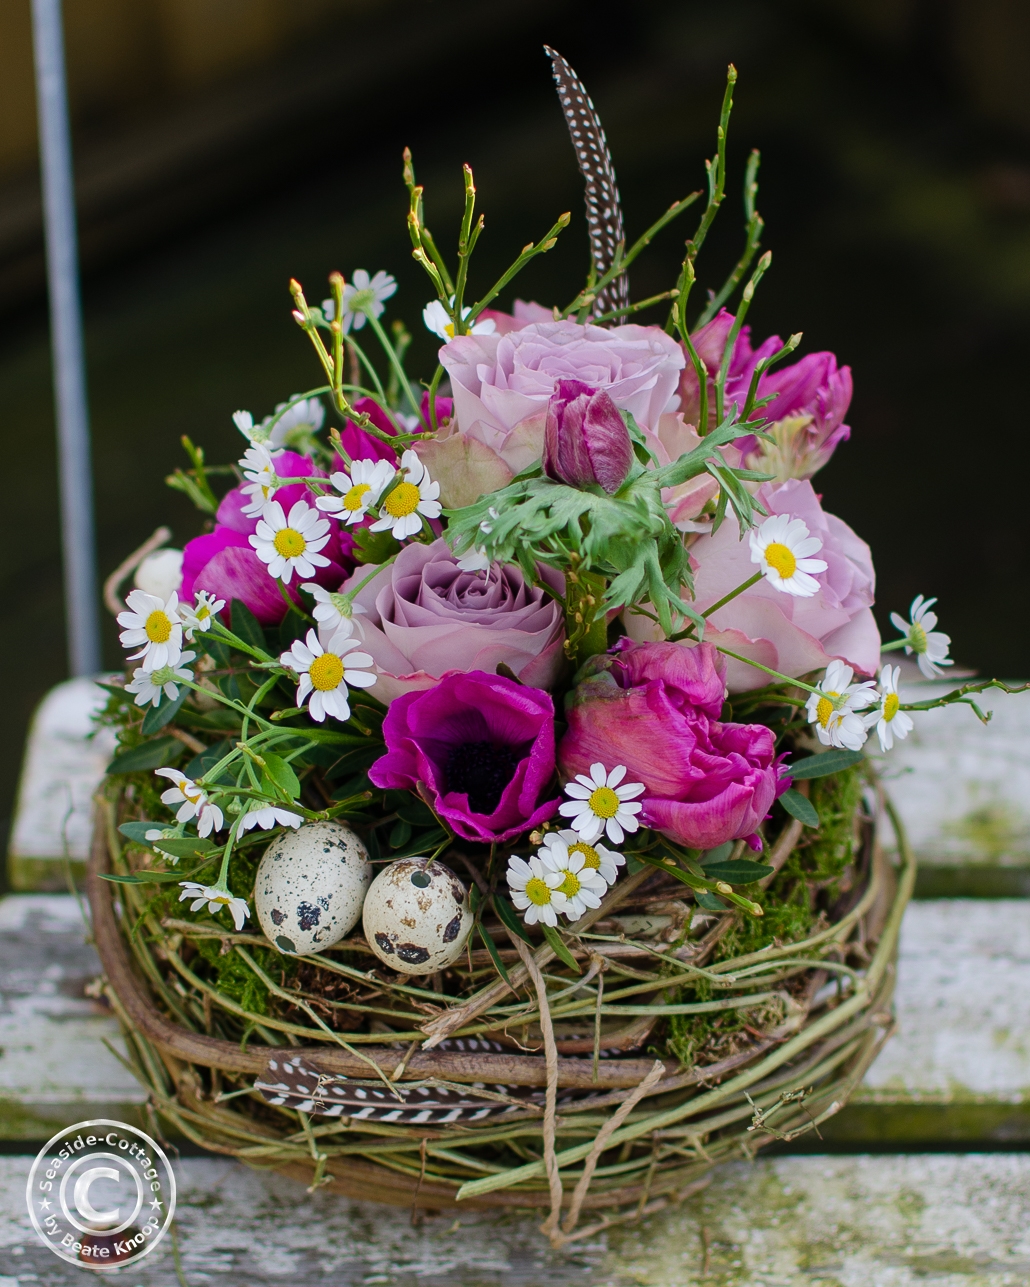 Nest aus Hopfenrebe geüllt mit pinkfarbenen Anemonen und Tulpen, fliederfrabenen Rosen, Edelkamille, Heildebeergrün und Wachteleiern